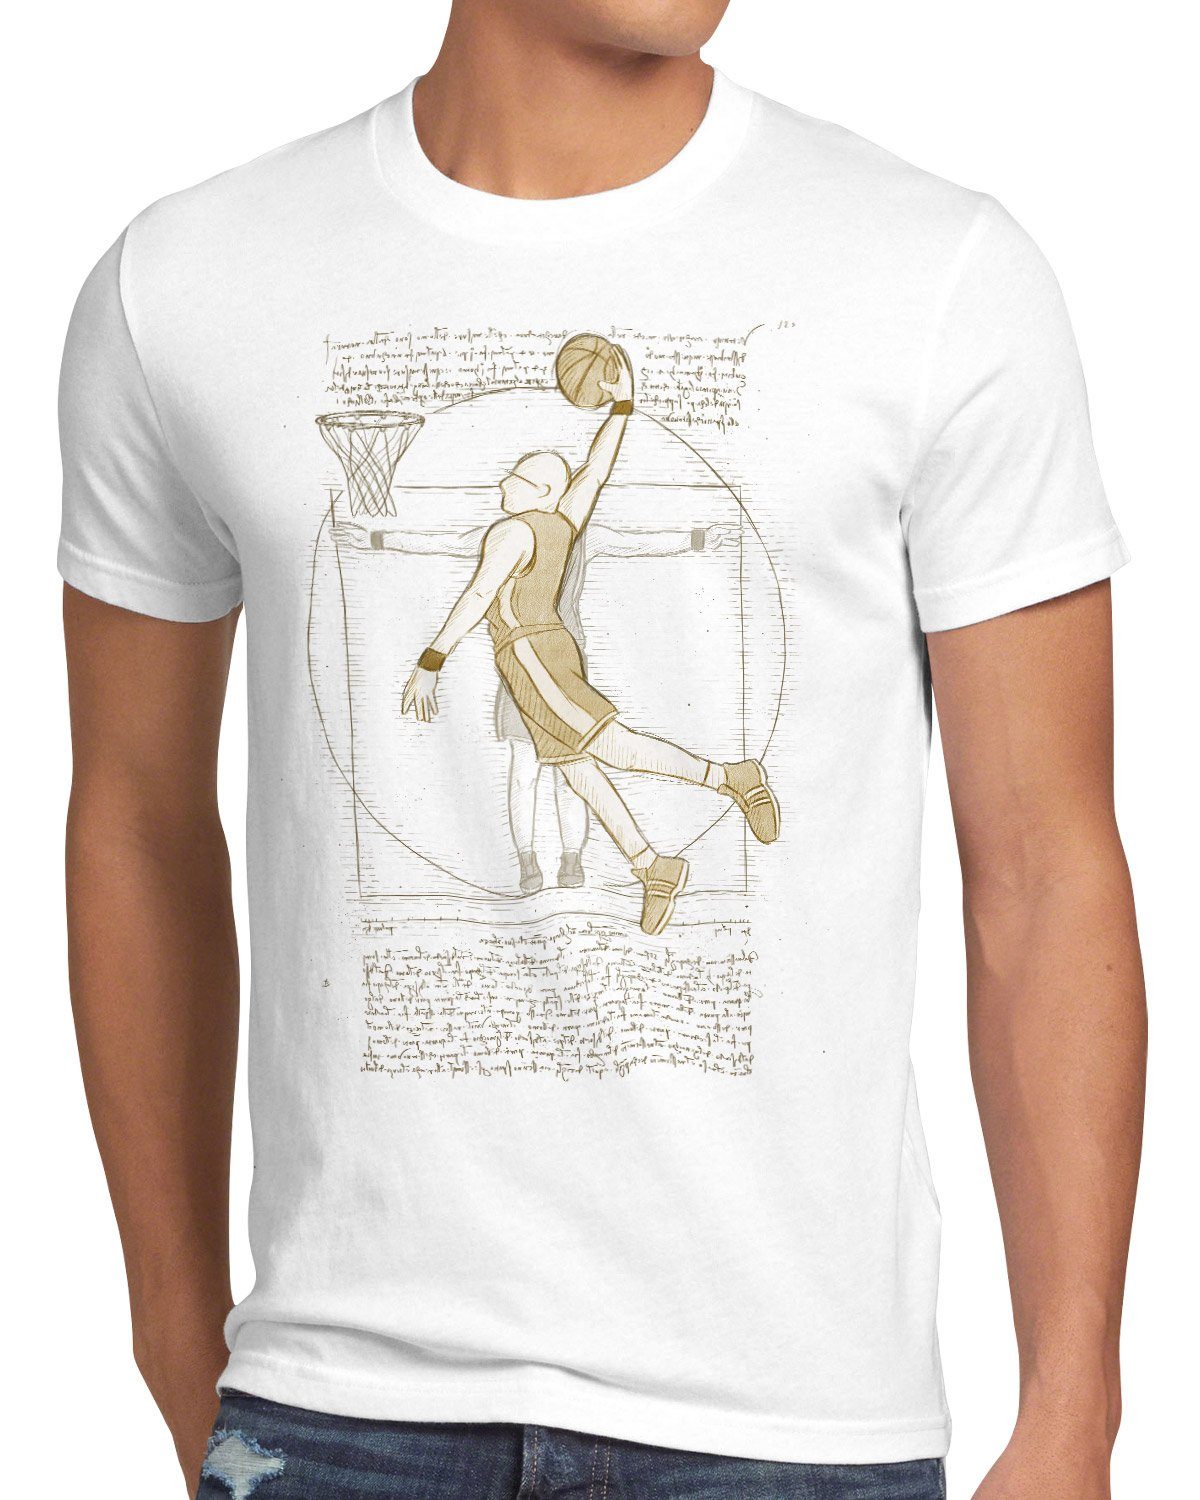 da Herren Print-Shirt Basketballspieler vinci T-Shirt mensch Vitruvianischer style3 ballsport weiß